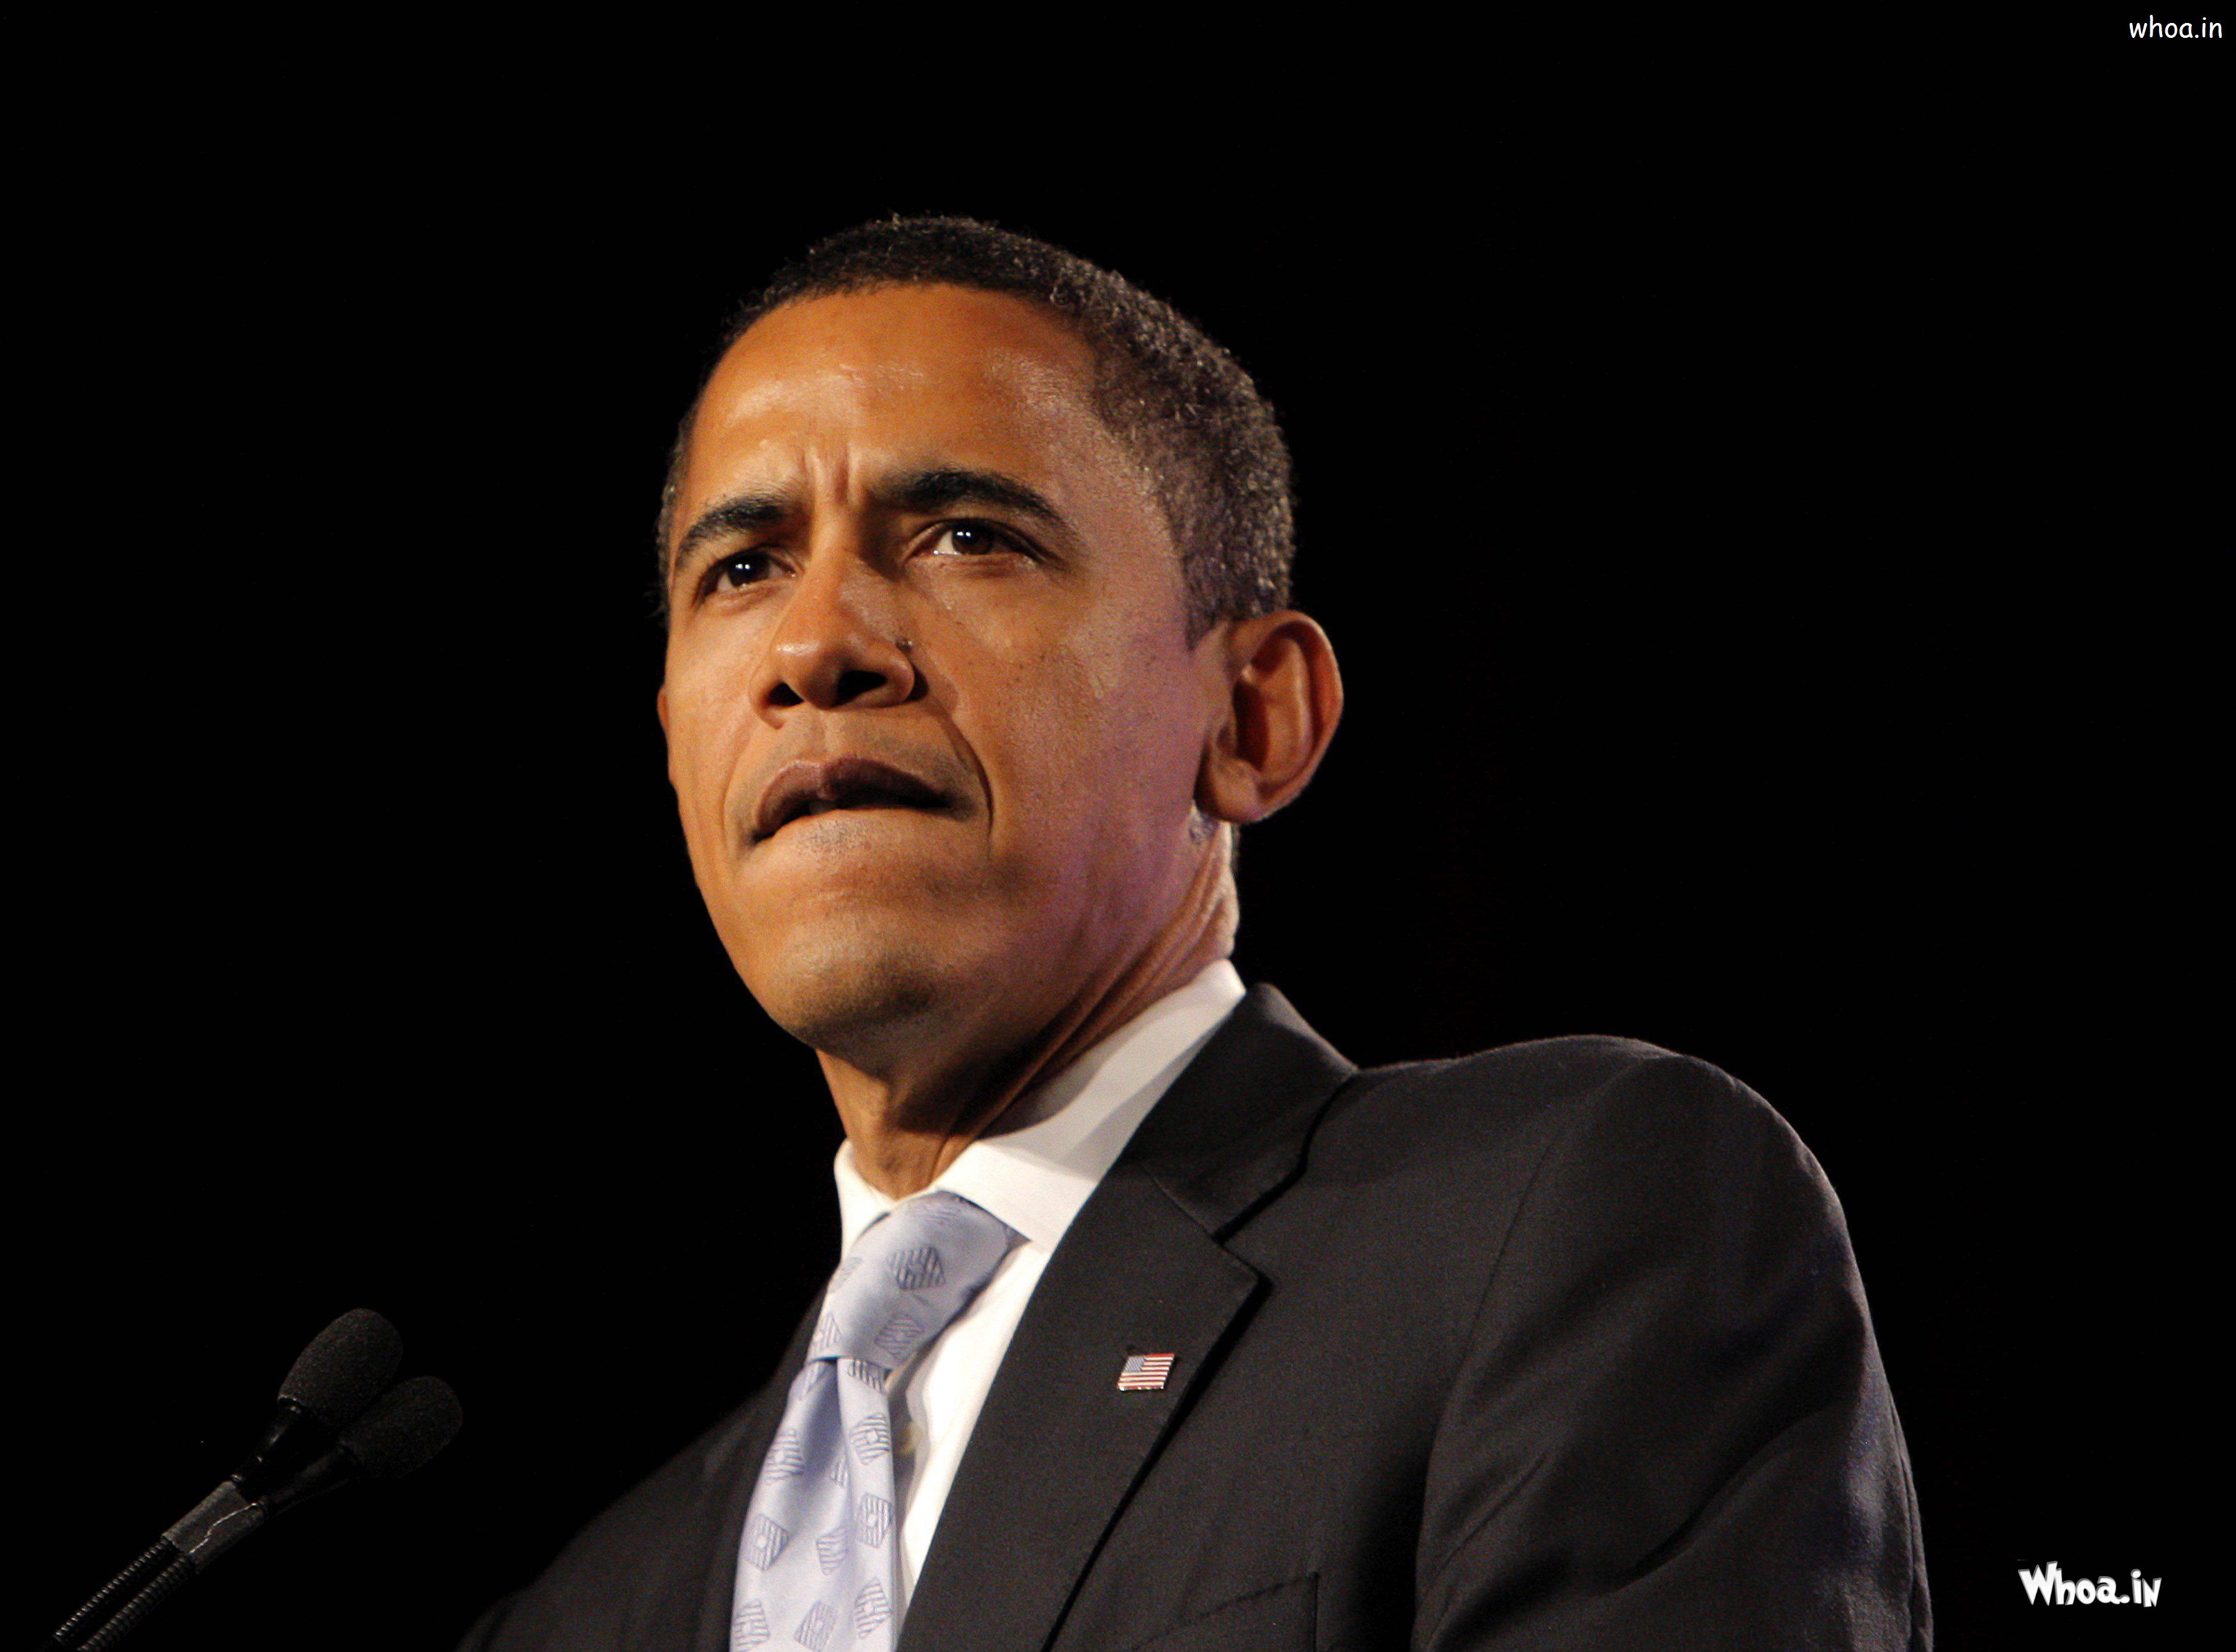 Current US President Barack Obama Black Suit With Dark Background